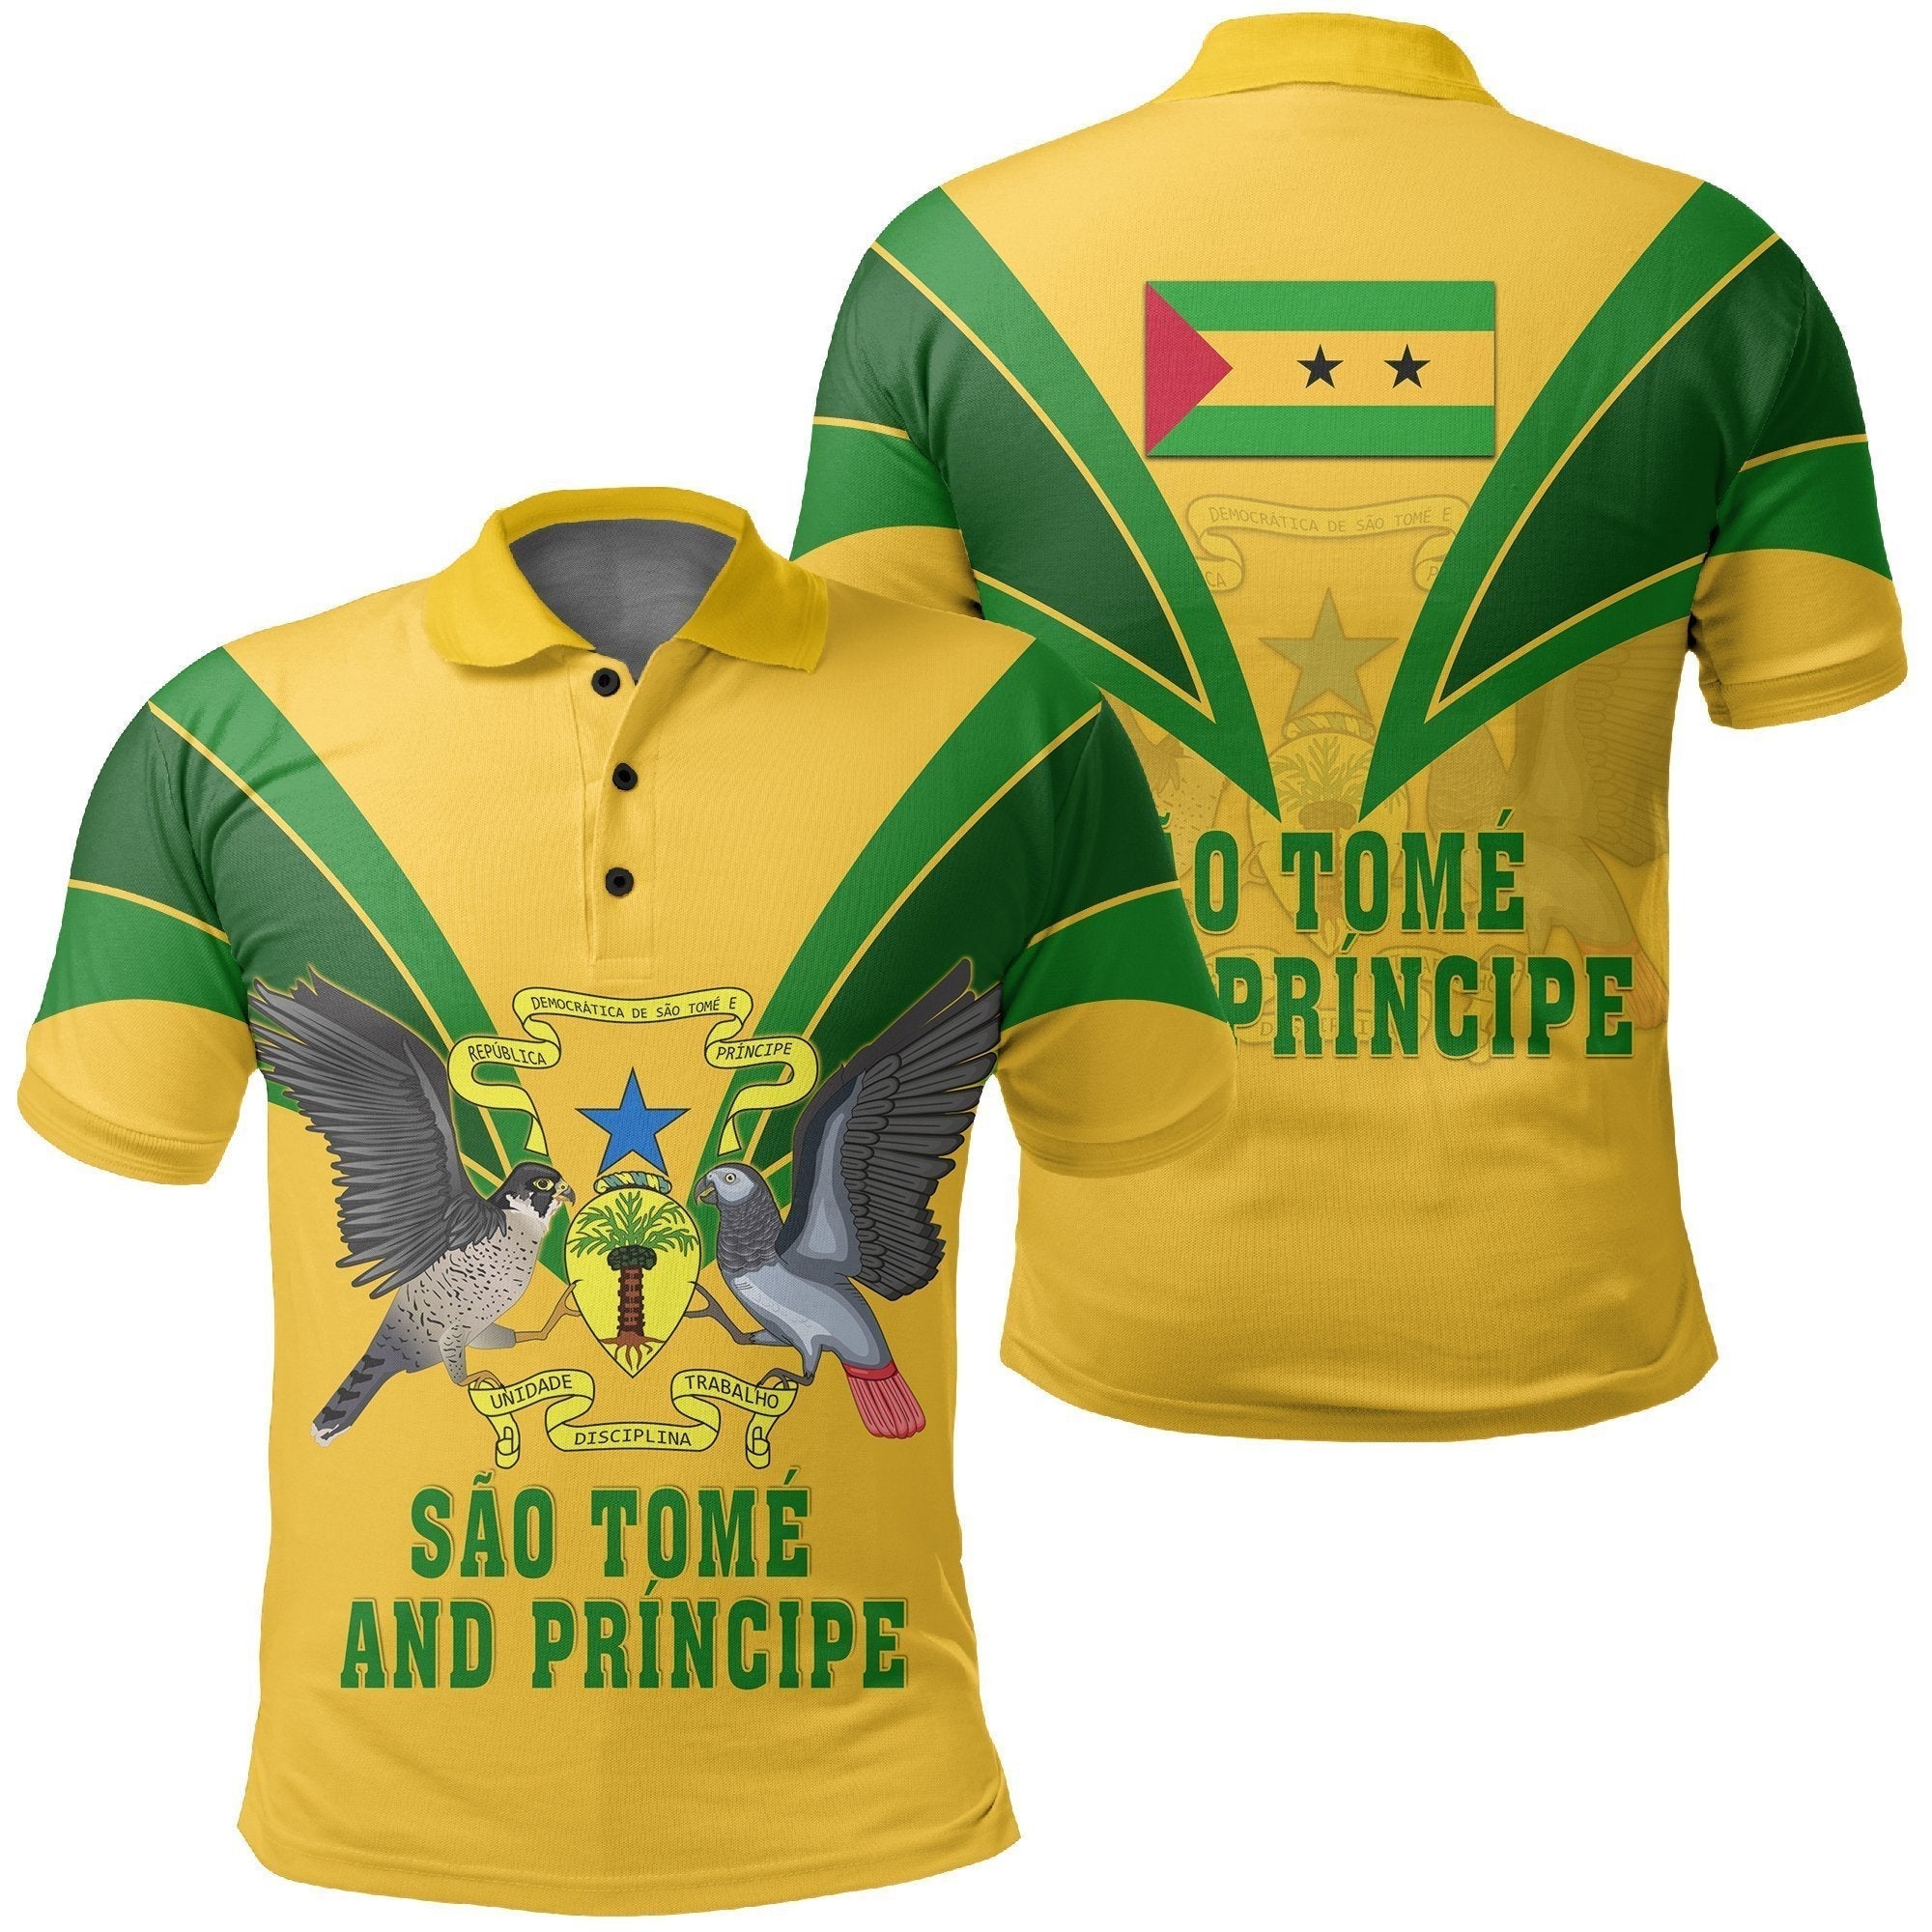 african-polo-shirt-sao-tome-and-principe-polo-shirt-tusk-style